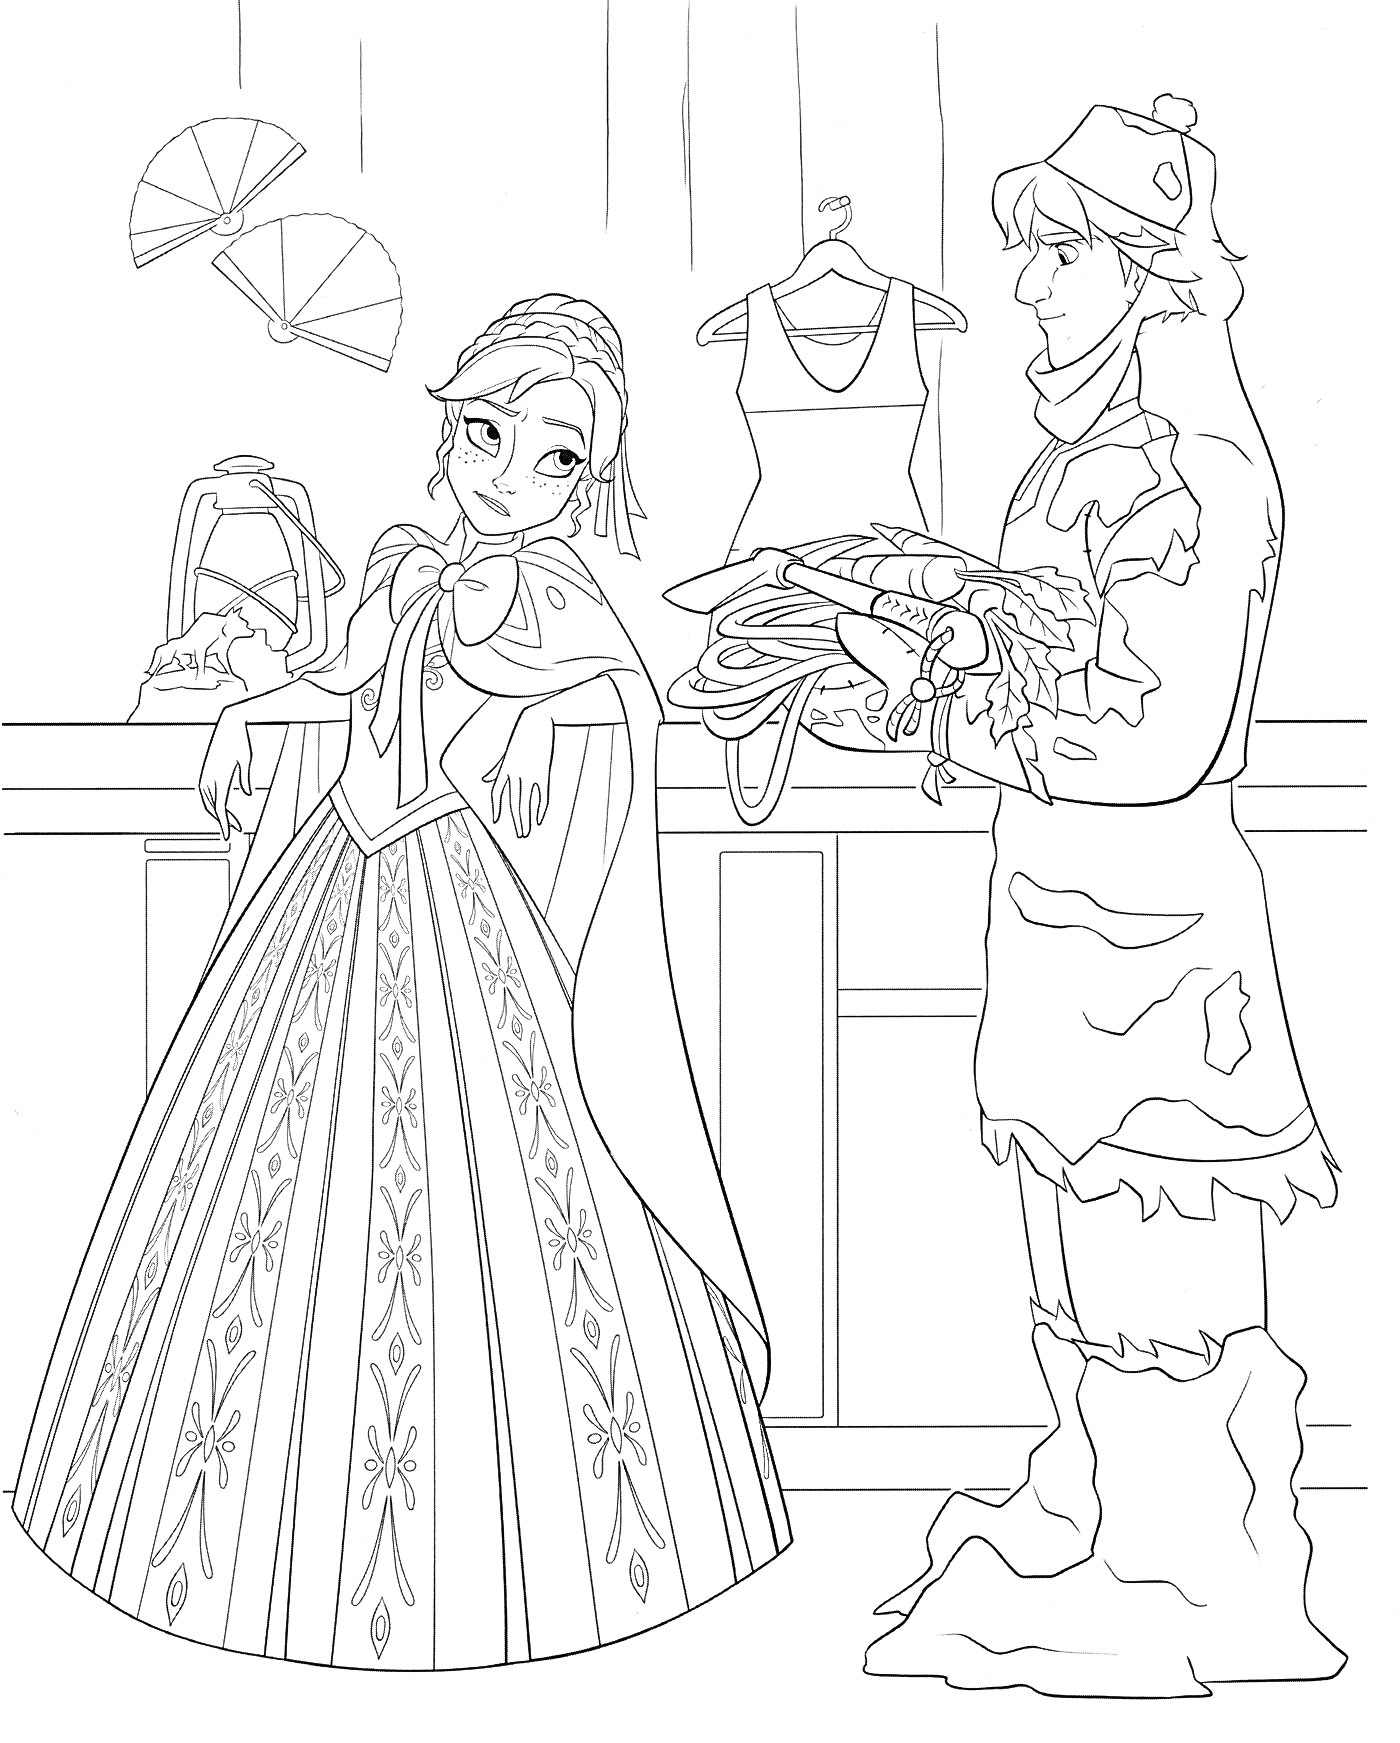 Женщина в длинном платье и мужчина в зимней одежде с сеном в руках, элементы гардероба на фоне